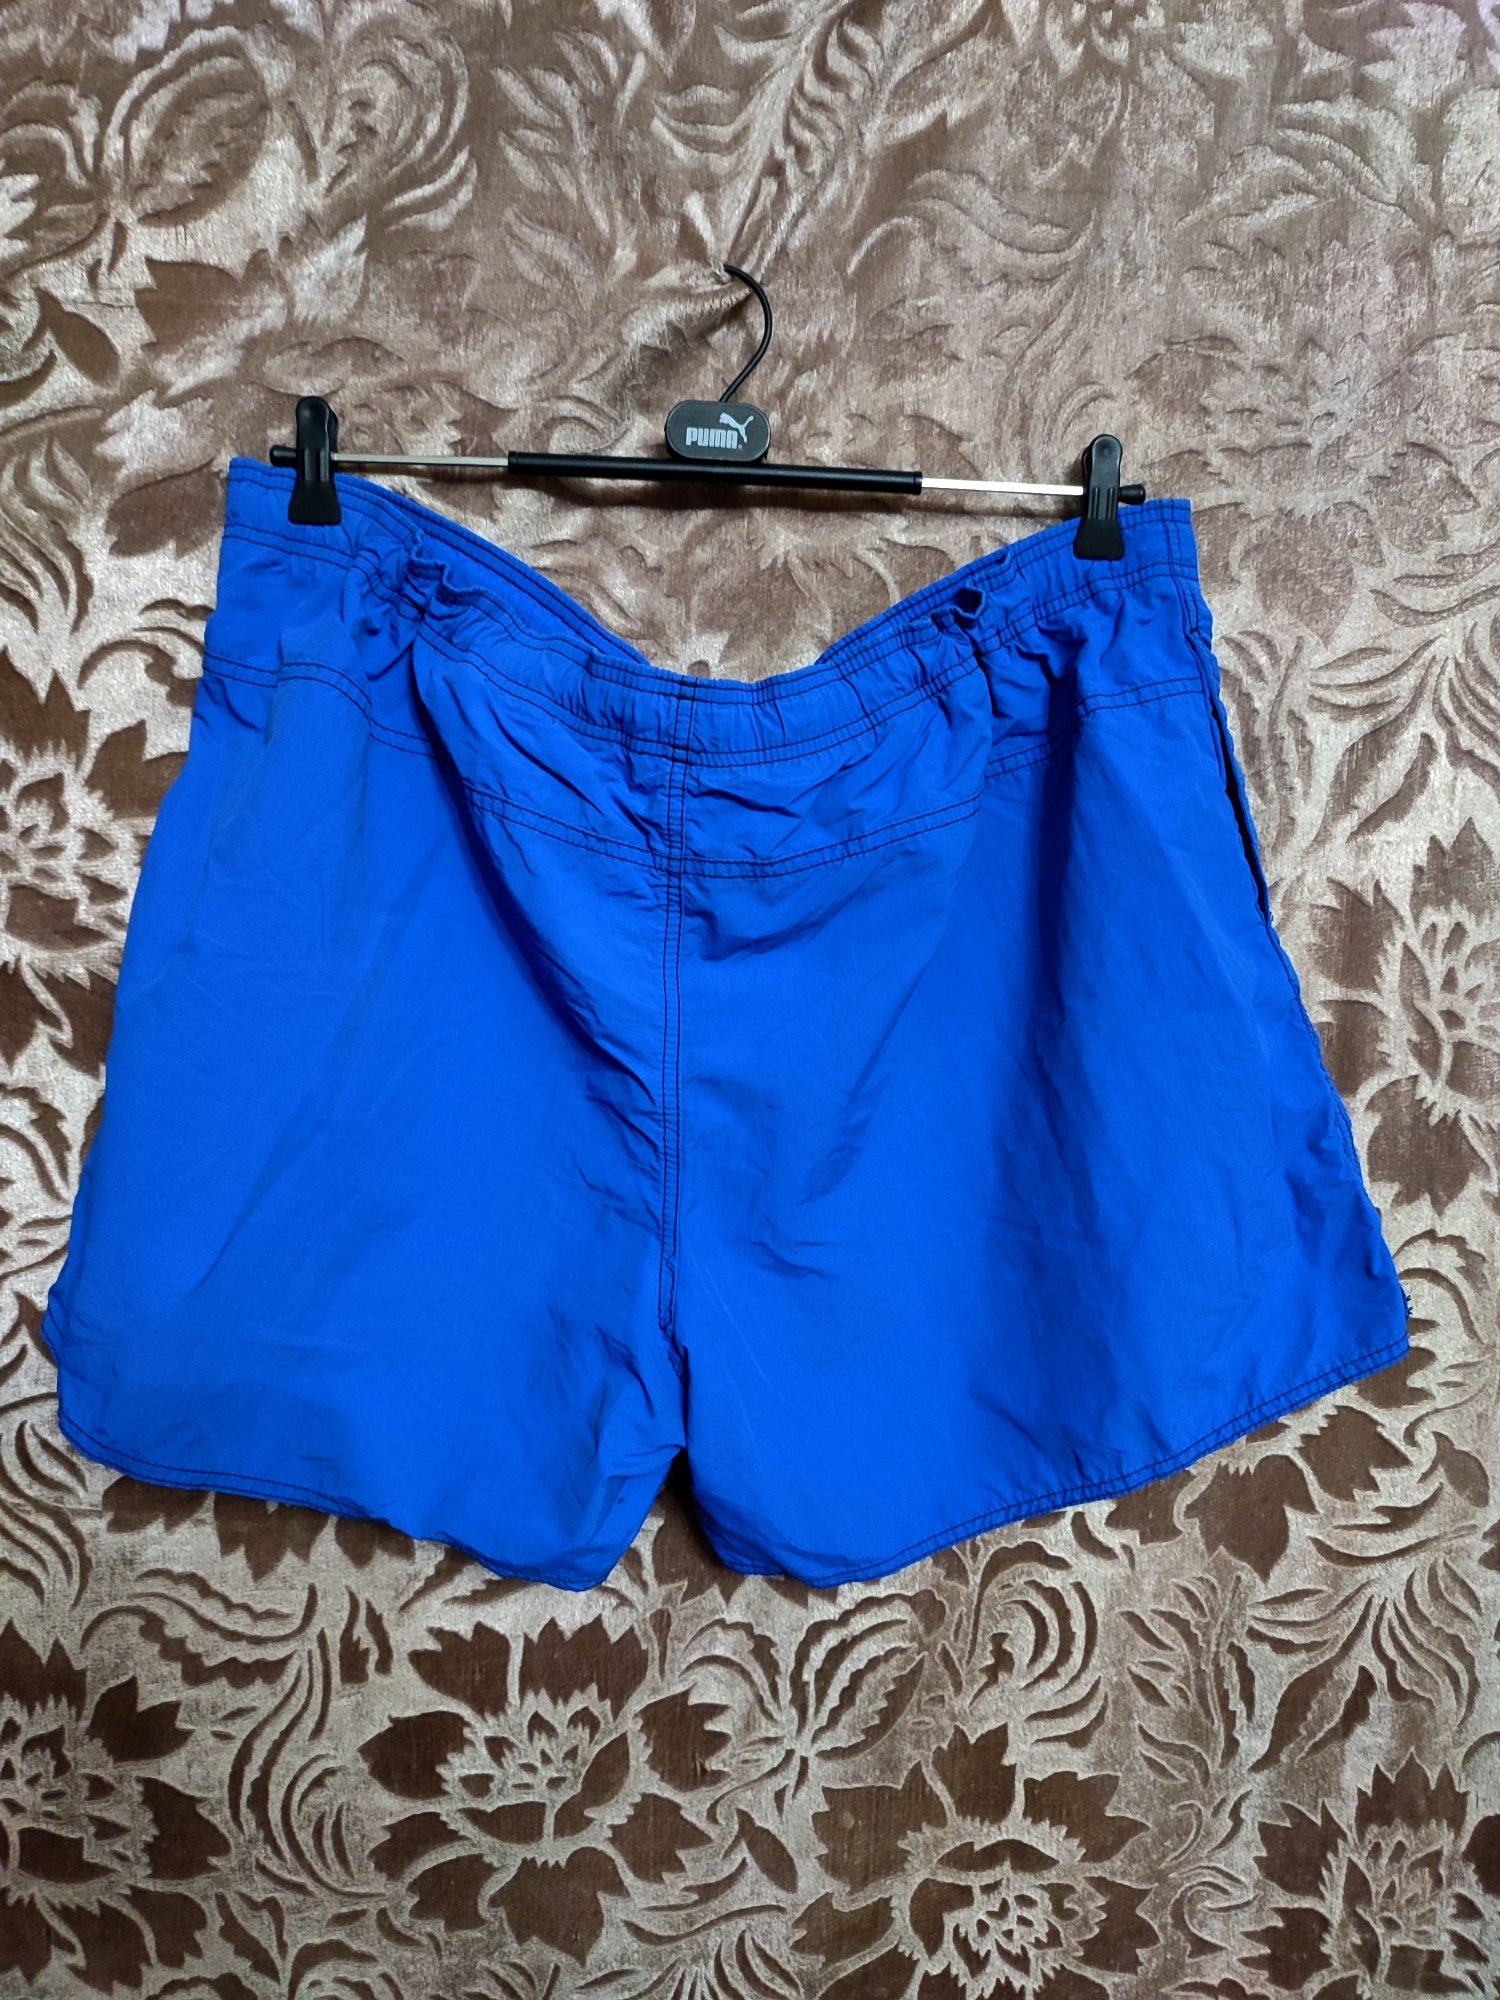 Шорты ,,Adidas" 54-56р., мужские плавательные шорты.